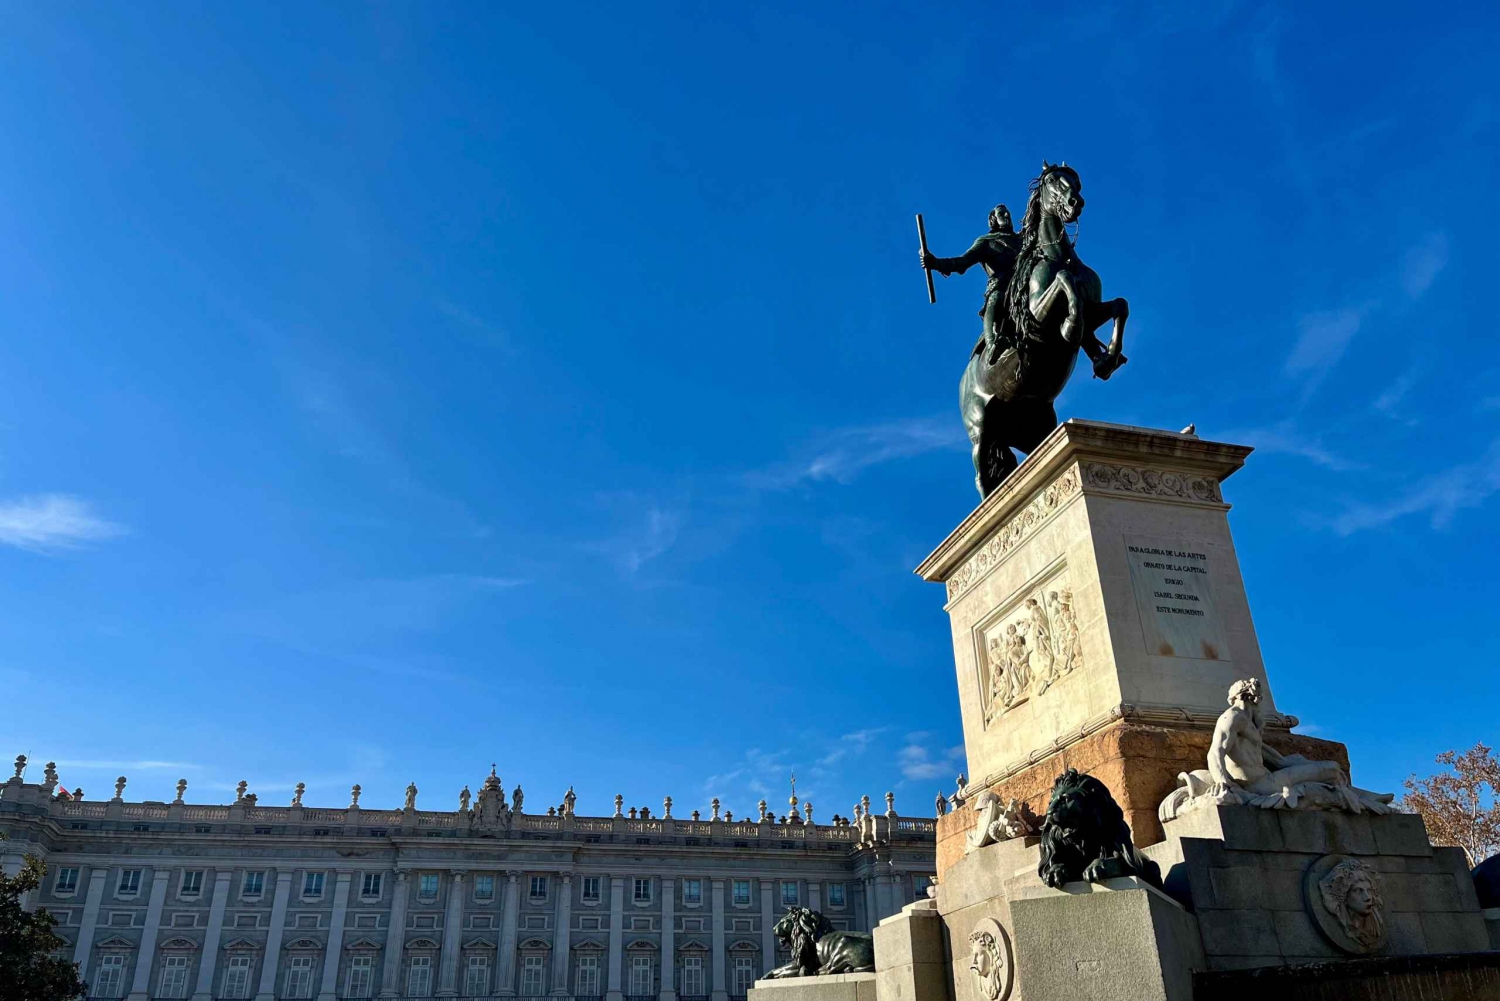 Découvrez Madrid en cherchant le Trésor de Philippe IV